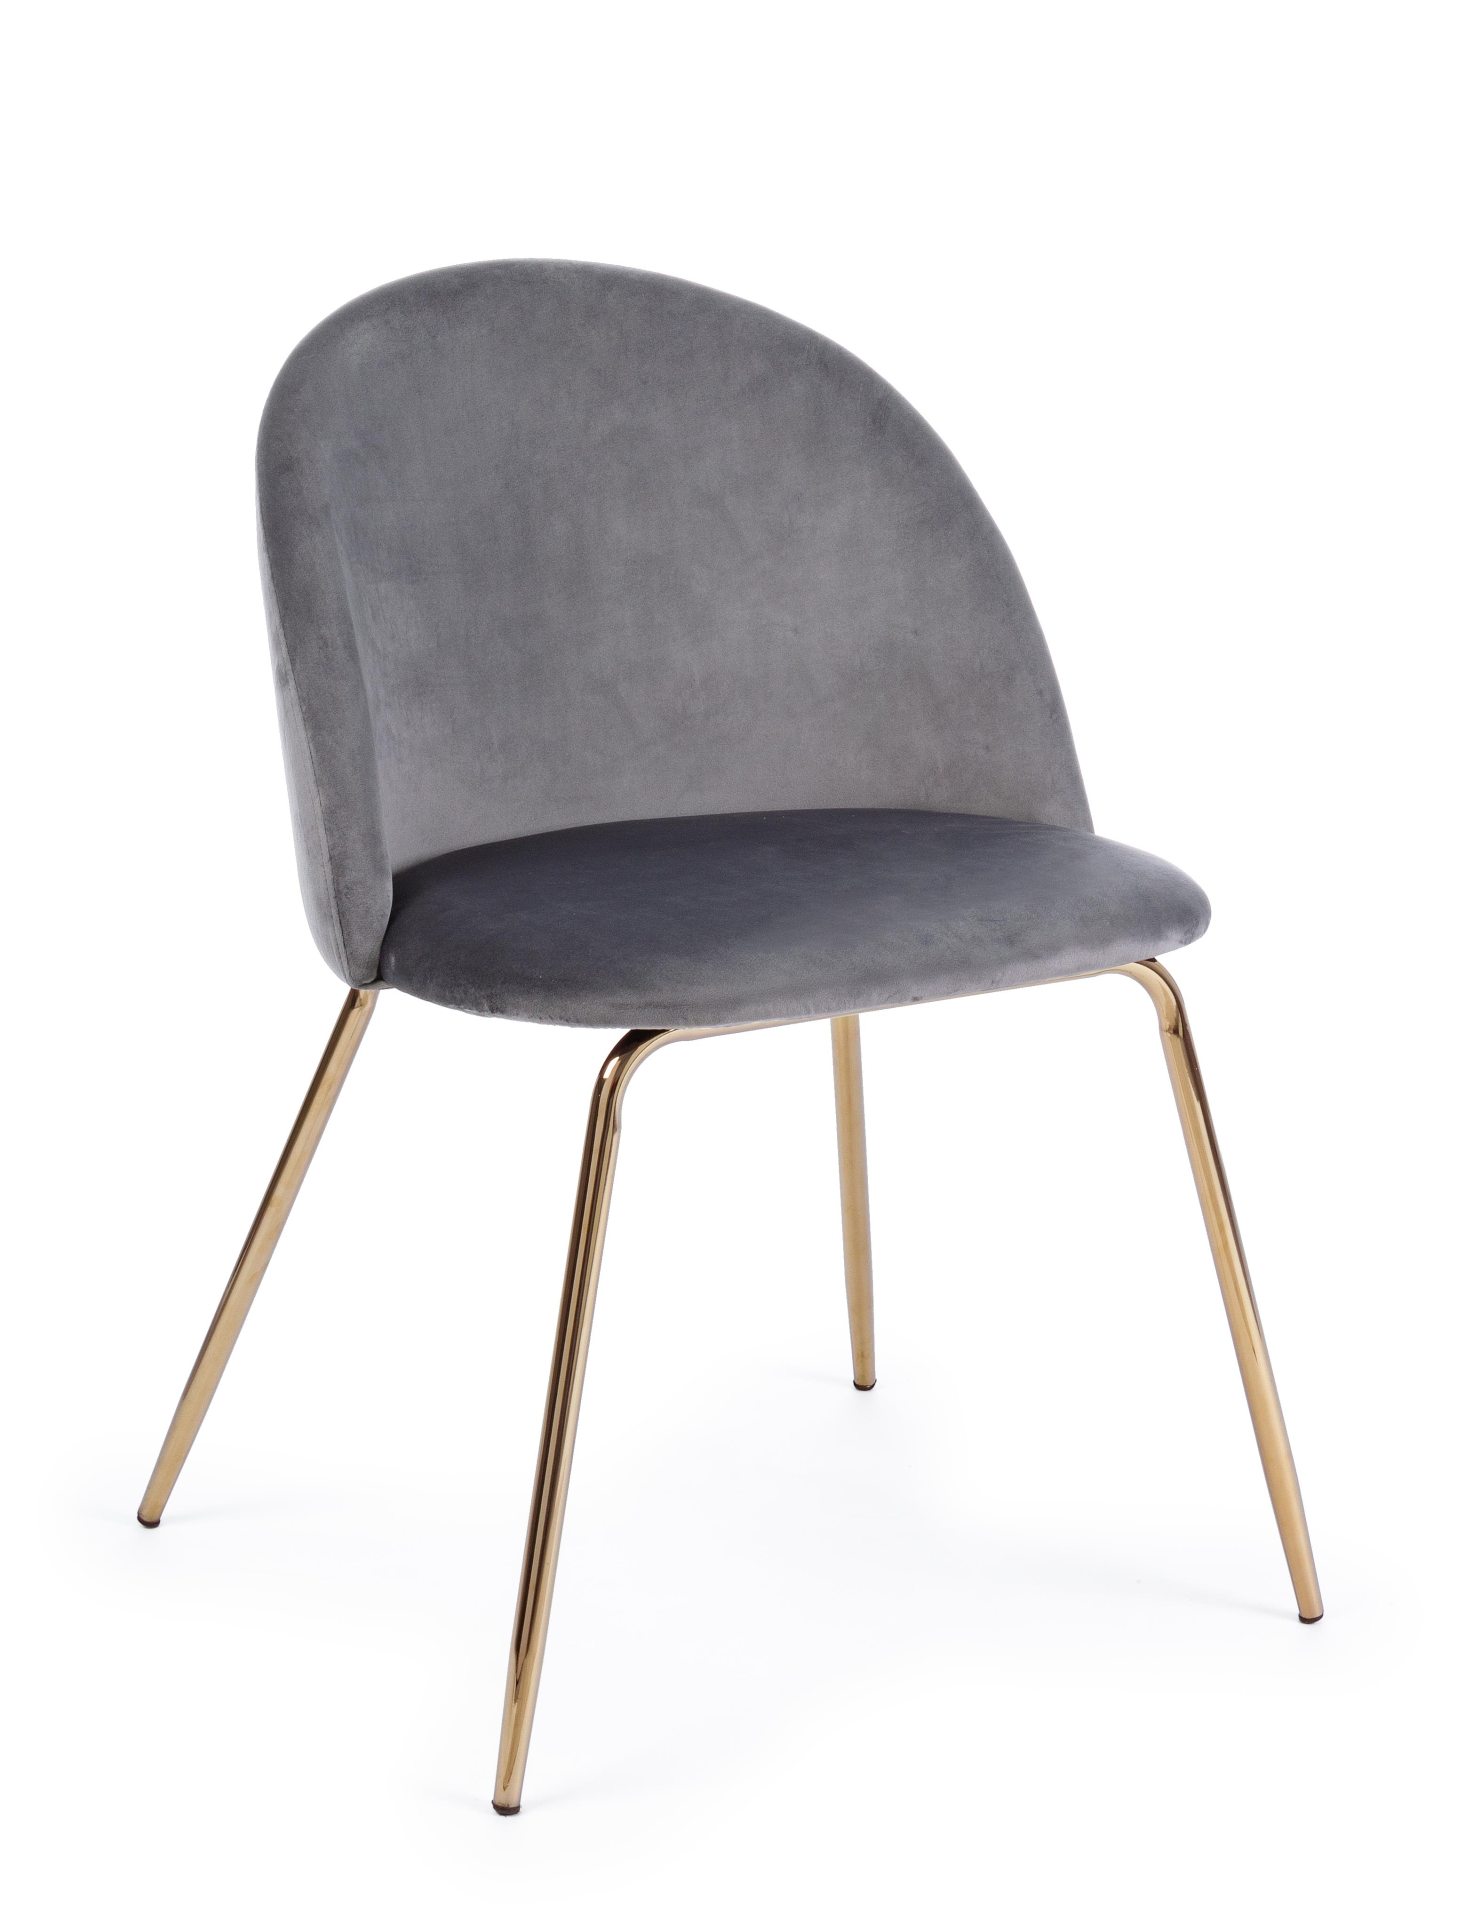 Der Esszimmerstuhl Tanya überzeugt mit seinem modernem Design. Gefertigt wurde der Stuhl aus Samt, welcher einen dunkelgrauen Farbton besitzt. Das Gestell ist aus Metall und ist Gold. Die Sitzhöhe beträgt 46 cm.